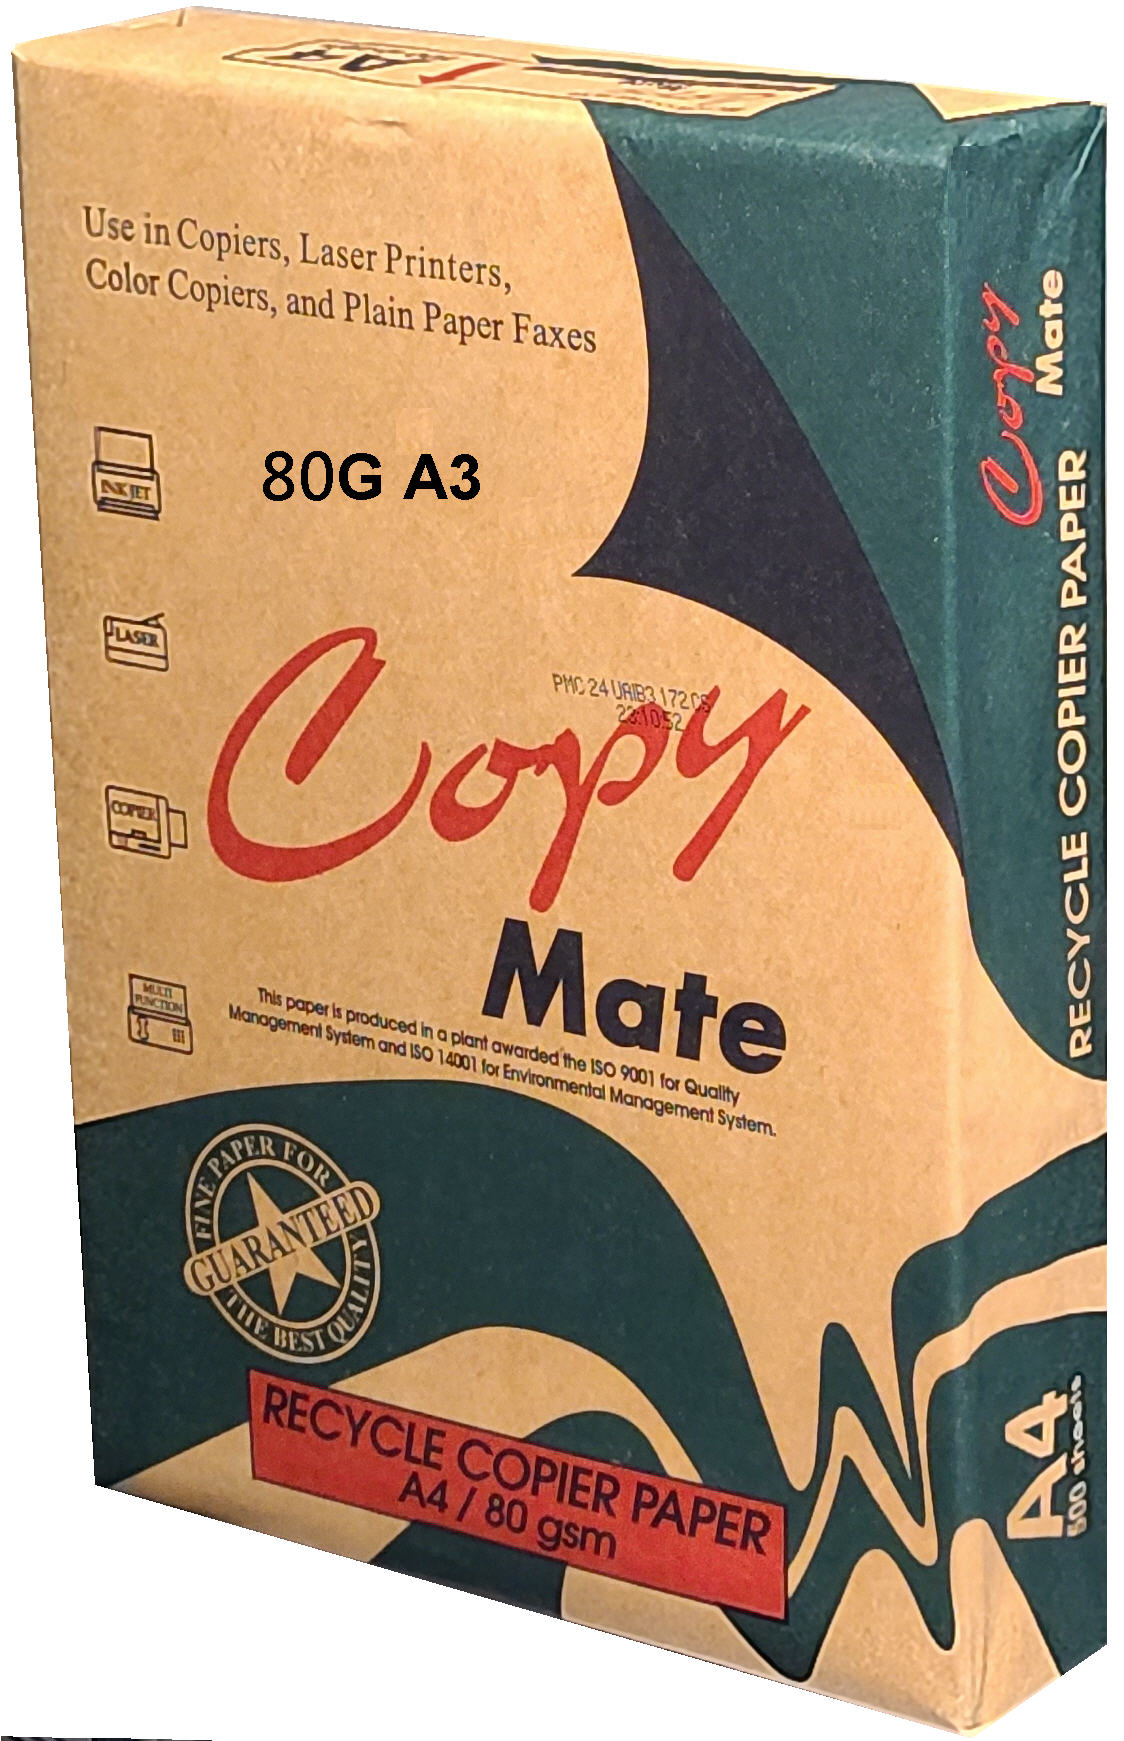 COPY MATE 環保再生紙 80G A3